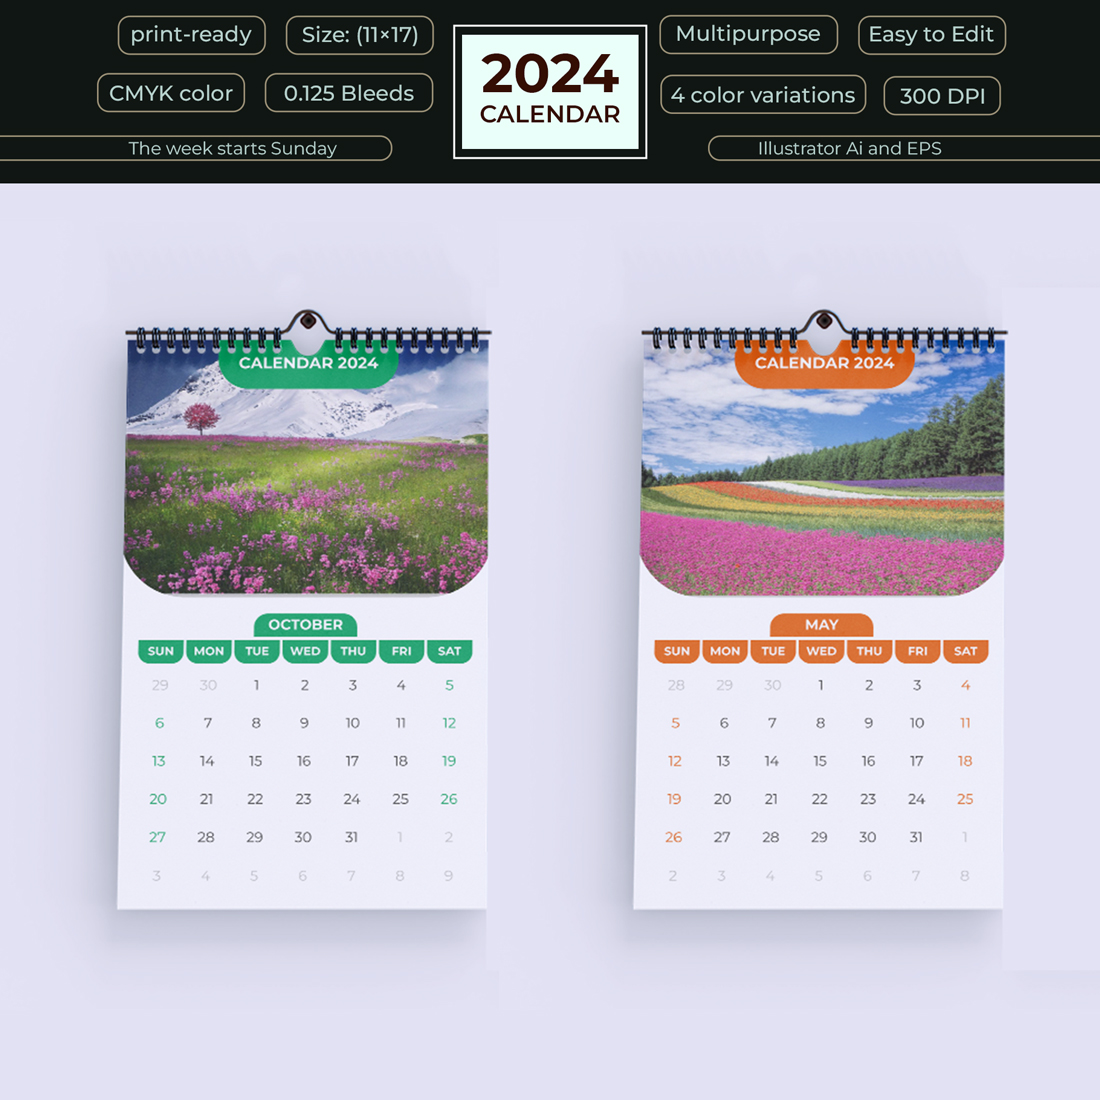 Calendar Design for 2024 cover image.